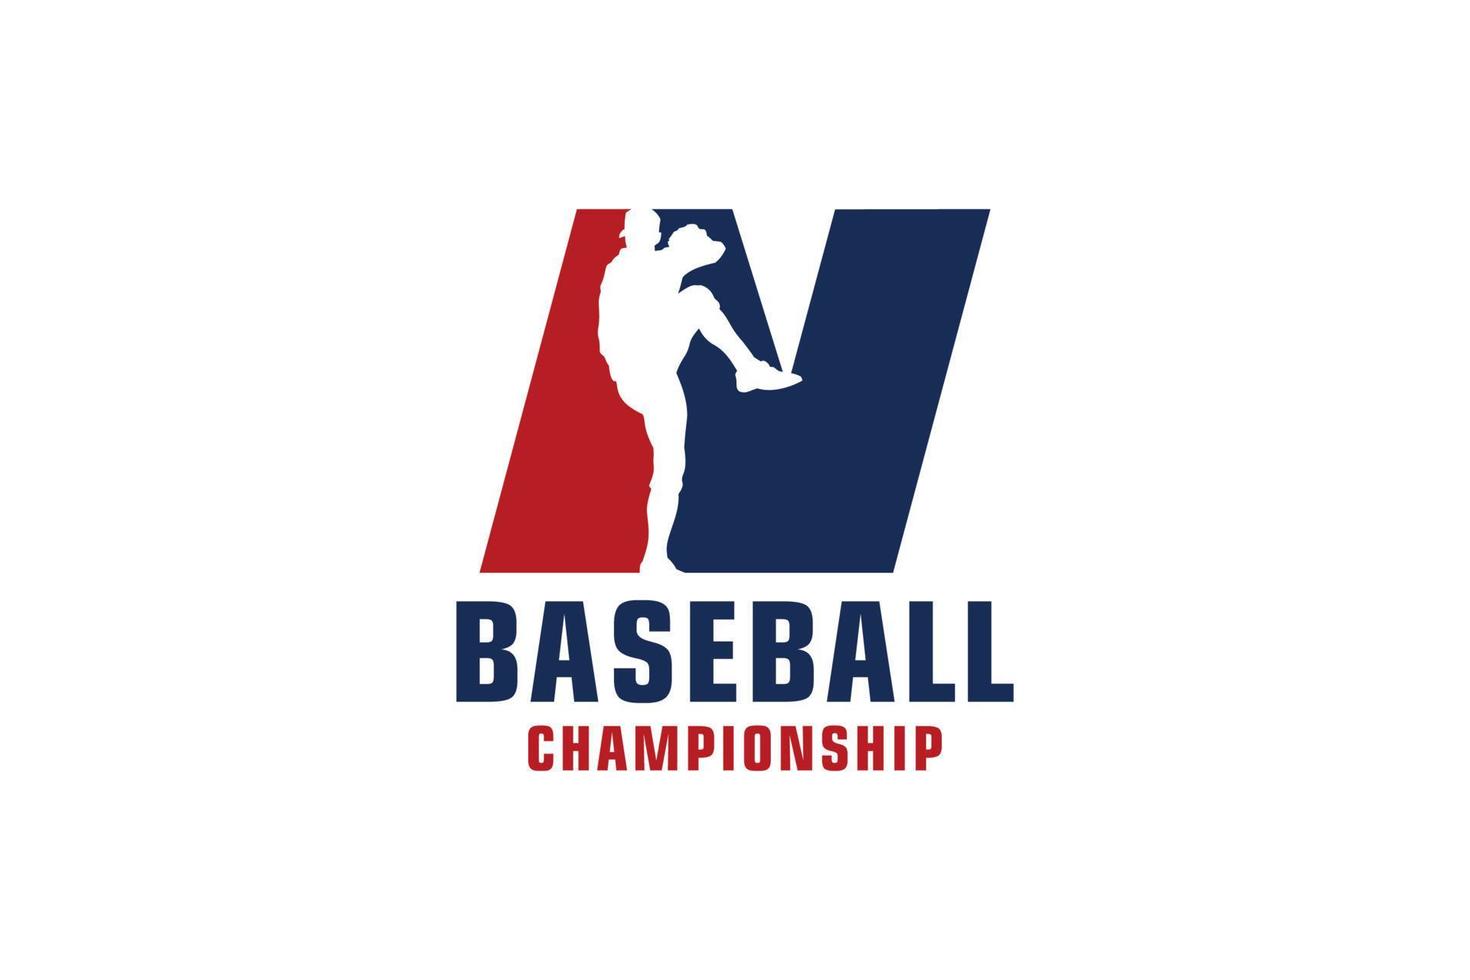 lettera n con logo da baseball. elementi del modello di progettazione vettoriale per la squadra sportiva o l'identità aziendale.